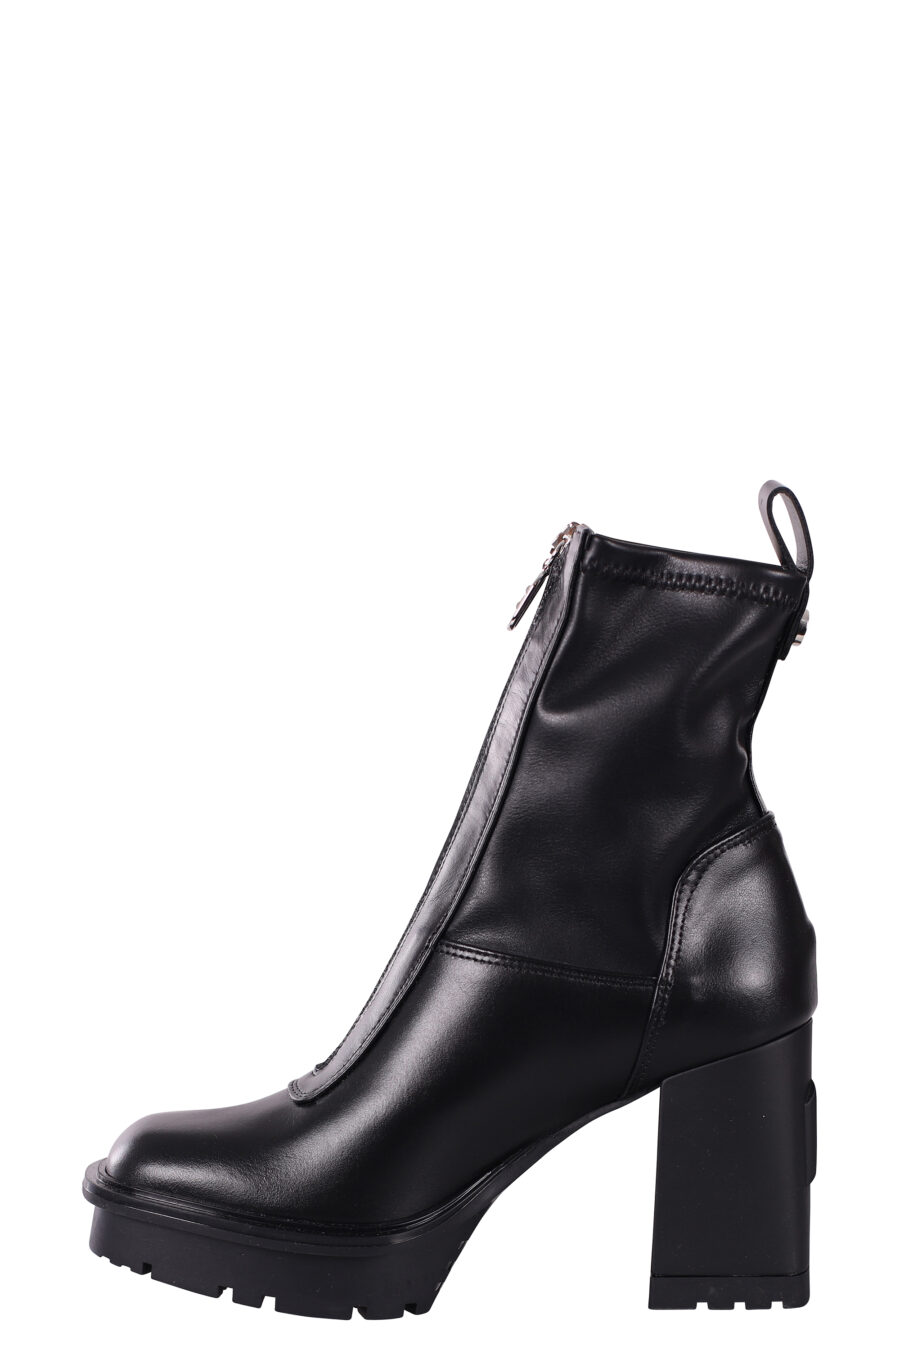 Botins pretos estilo meia com salto e plataforma - IMG 5813